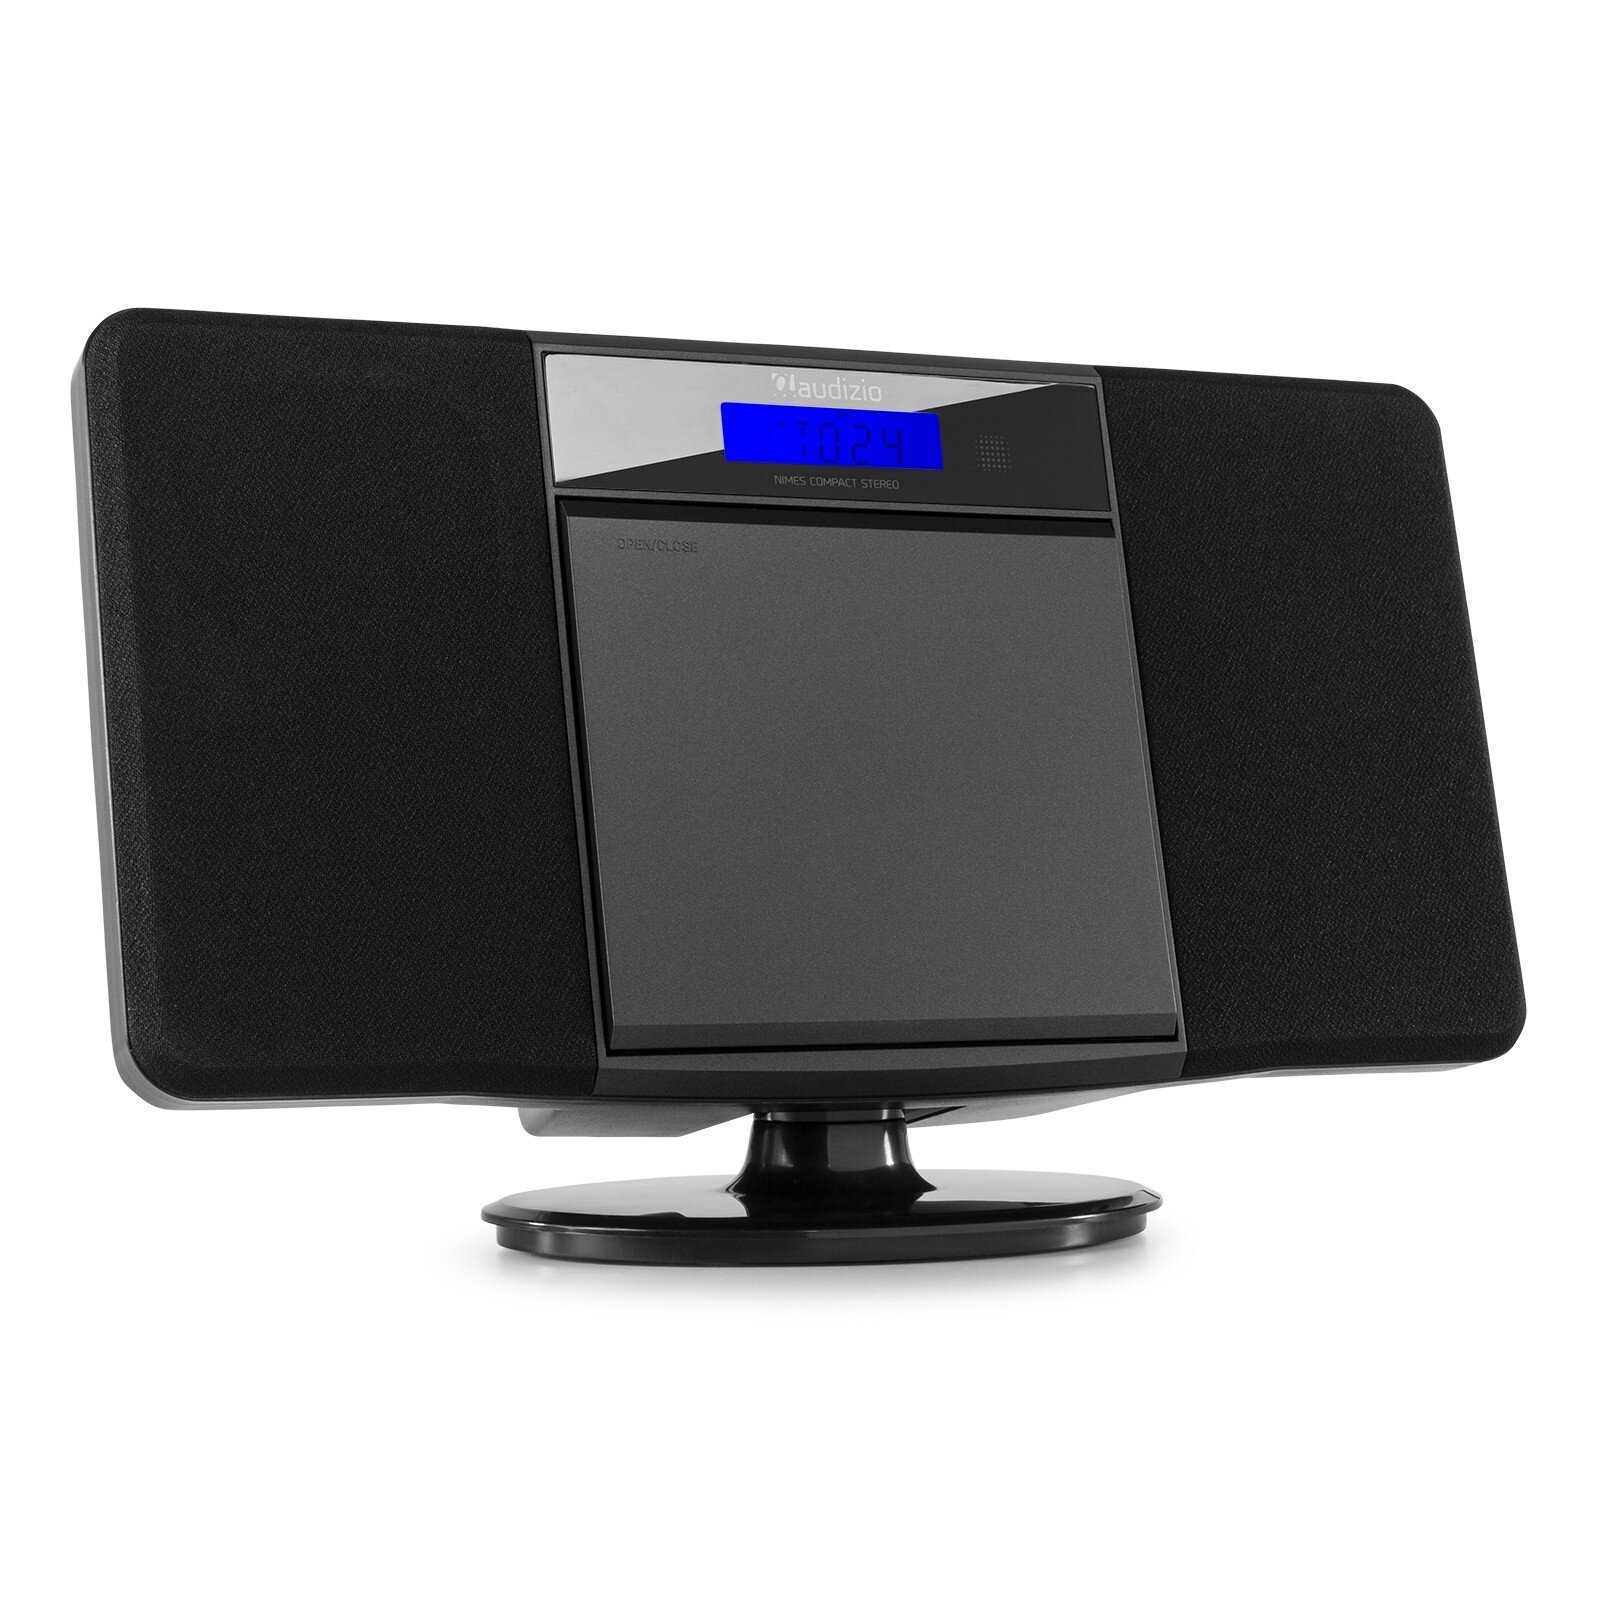 Audizio Nimes Bluetooth, FYNDHÖRNAN,med CD-spelare, USB mp3-spelare och radio - 50W - Svart